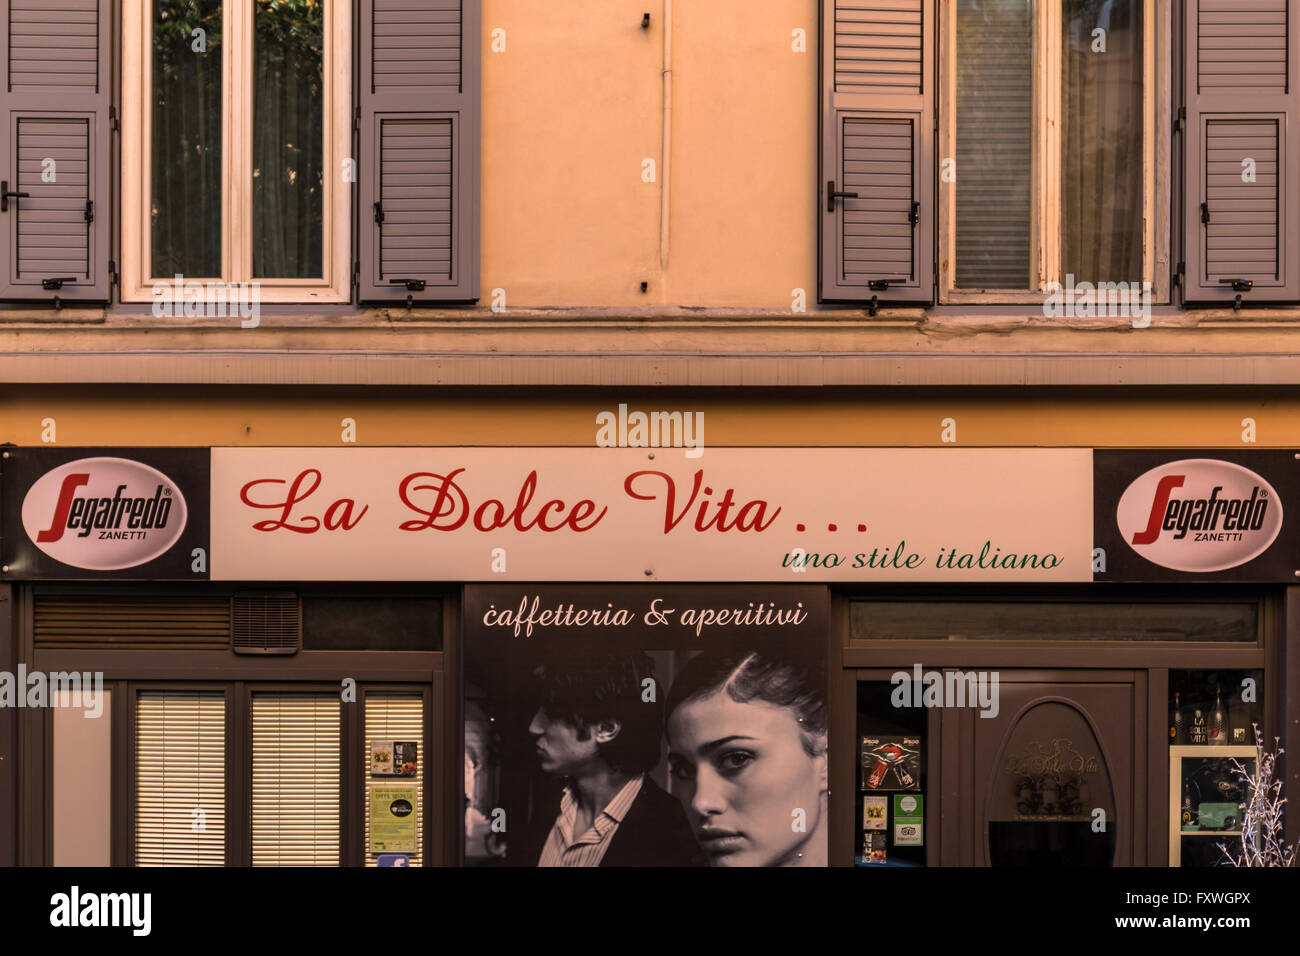 La Dolce Vita ... uno stile italiano sign outside of a bar in Gorizia, Italy Stock Photo